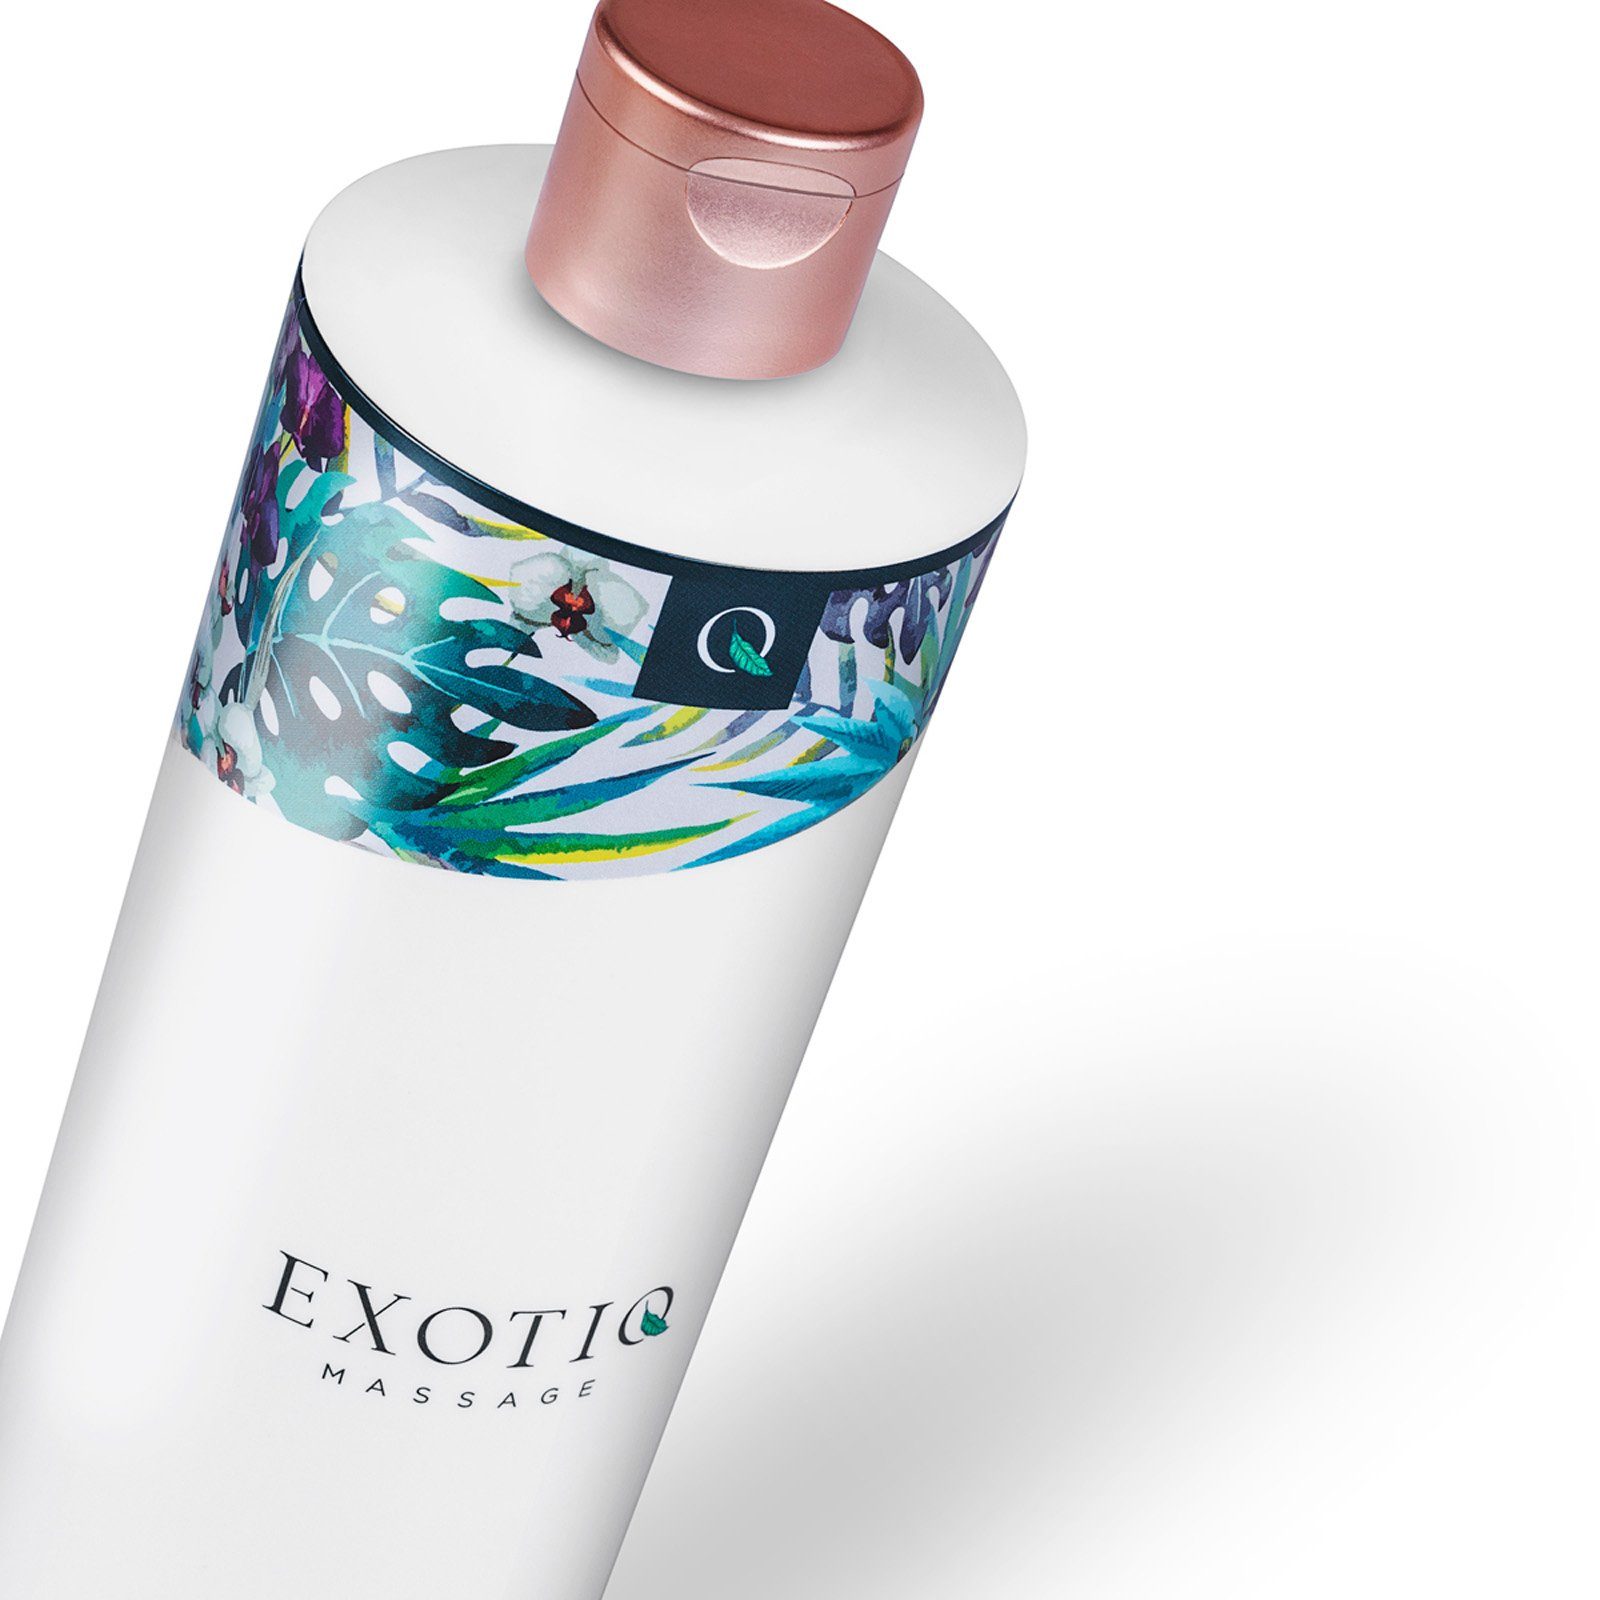 Exotiq - 500ml, 1-tlg., Wärmend Exotiq Massageöl Massageöl Wärmendes